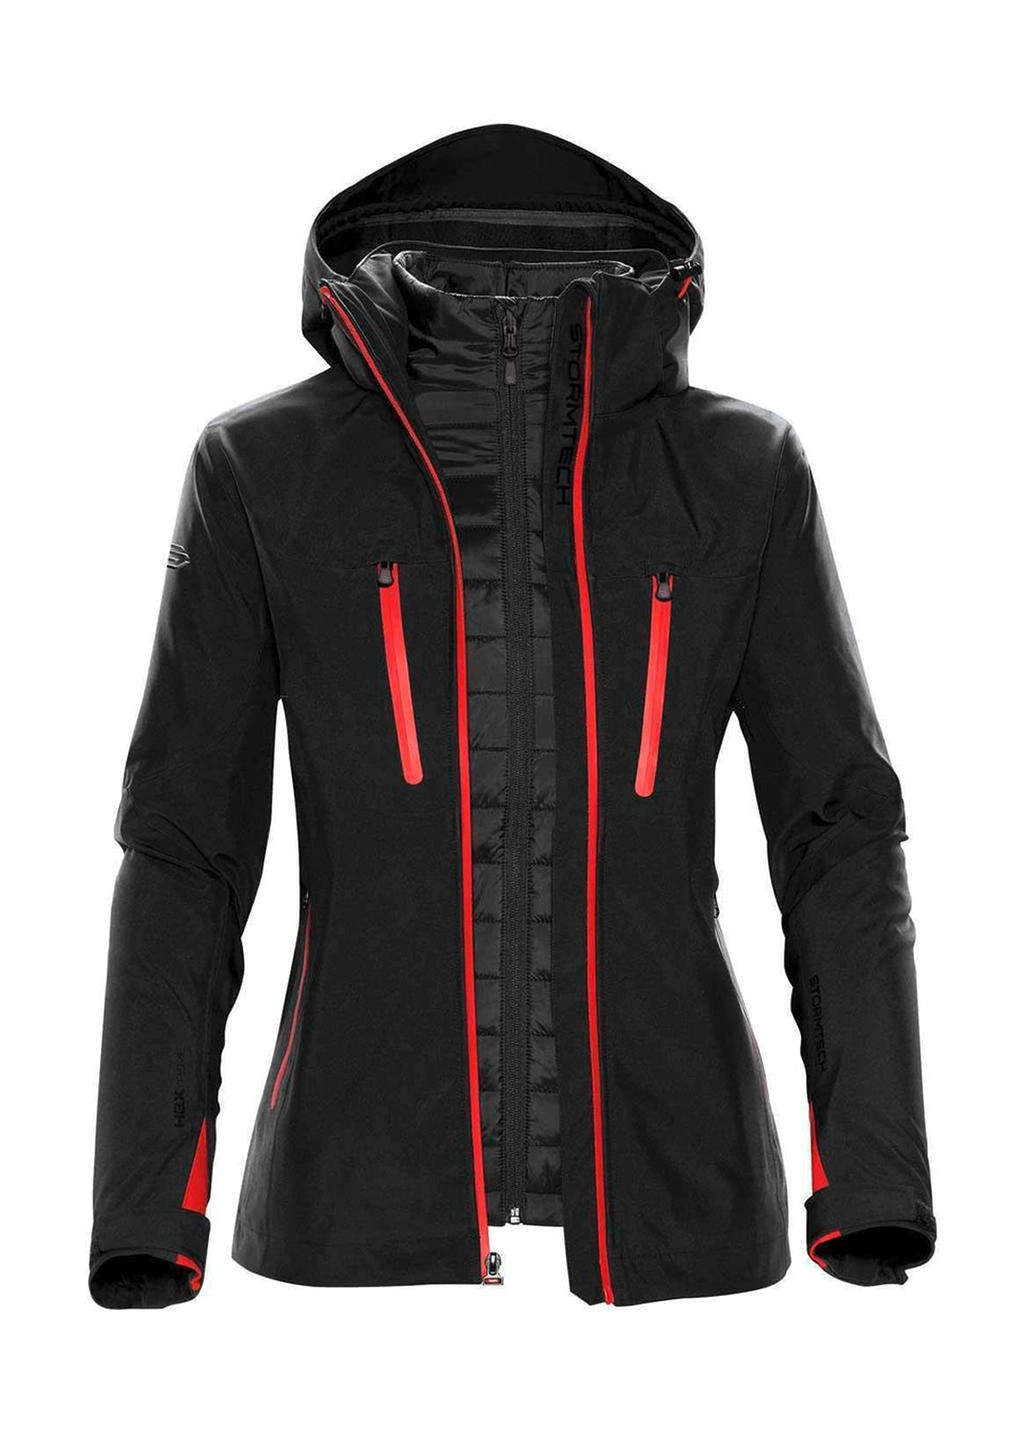 Women`s Matrix System Jacket zum Besticken und Bedrucken in der Farbe Black/Bright Red mit Ihren Logo, Schriftzug oder Motiv.